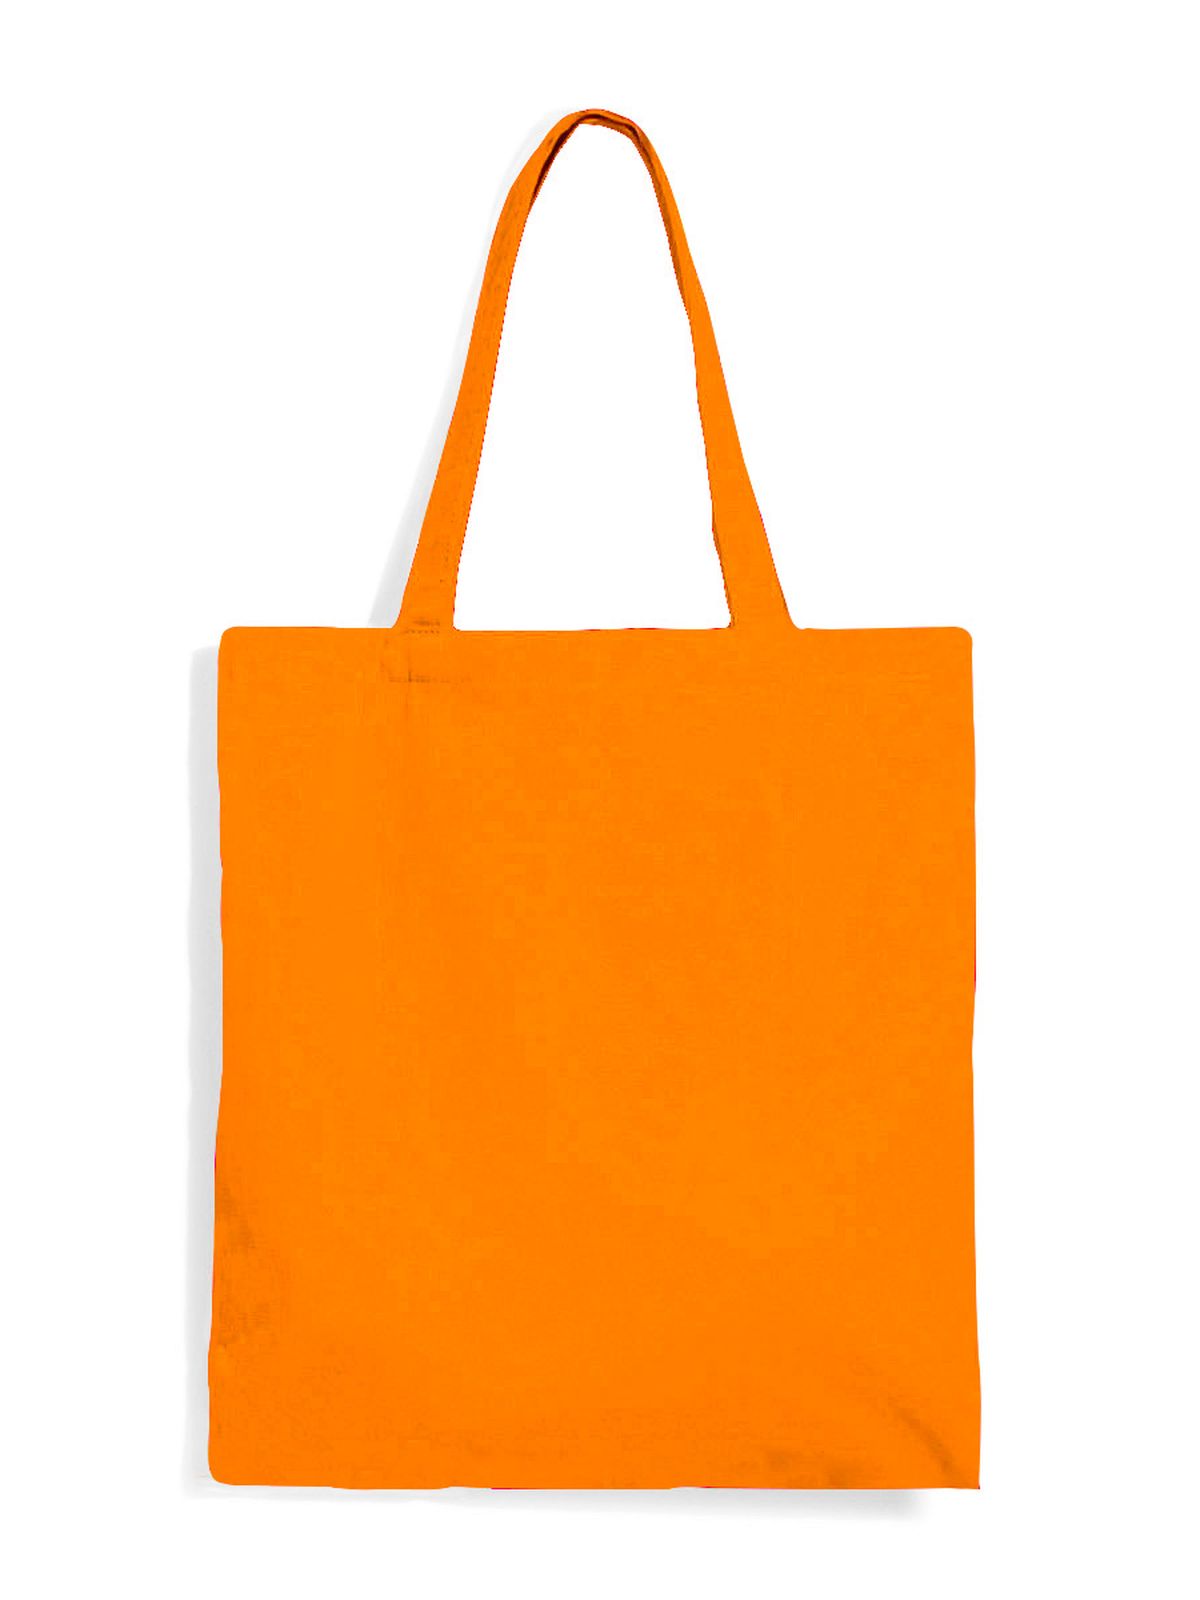 premium-bag-orange.webp